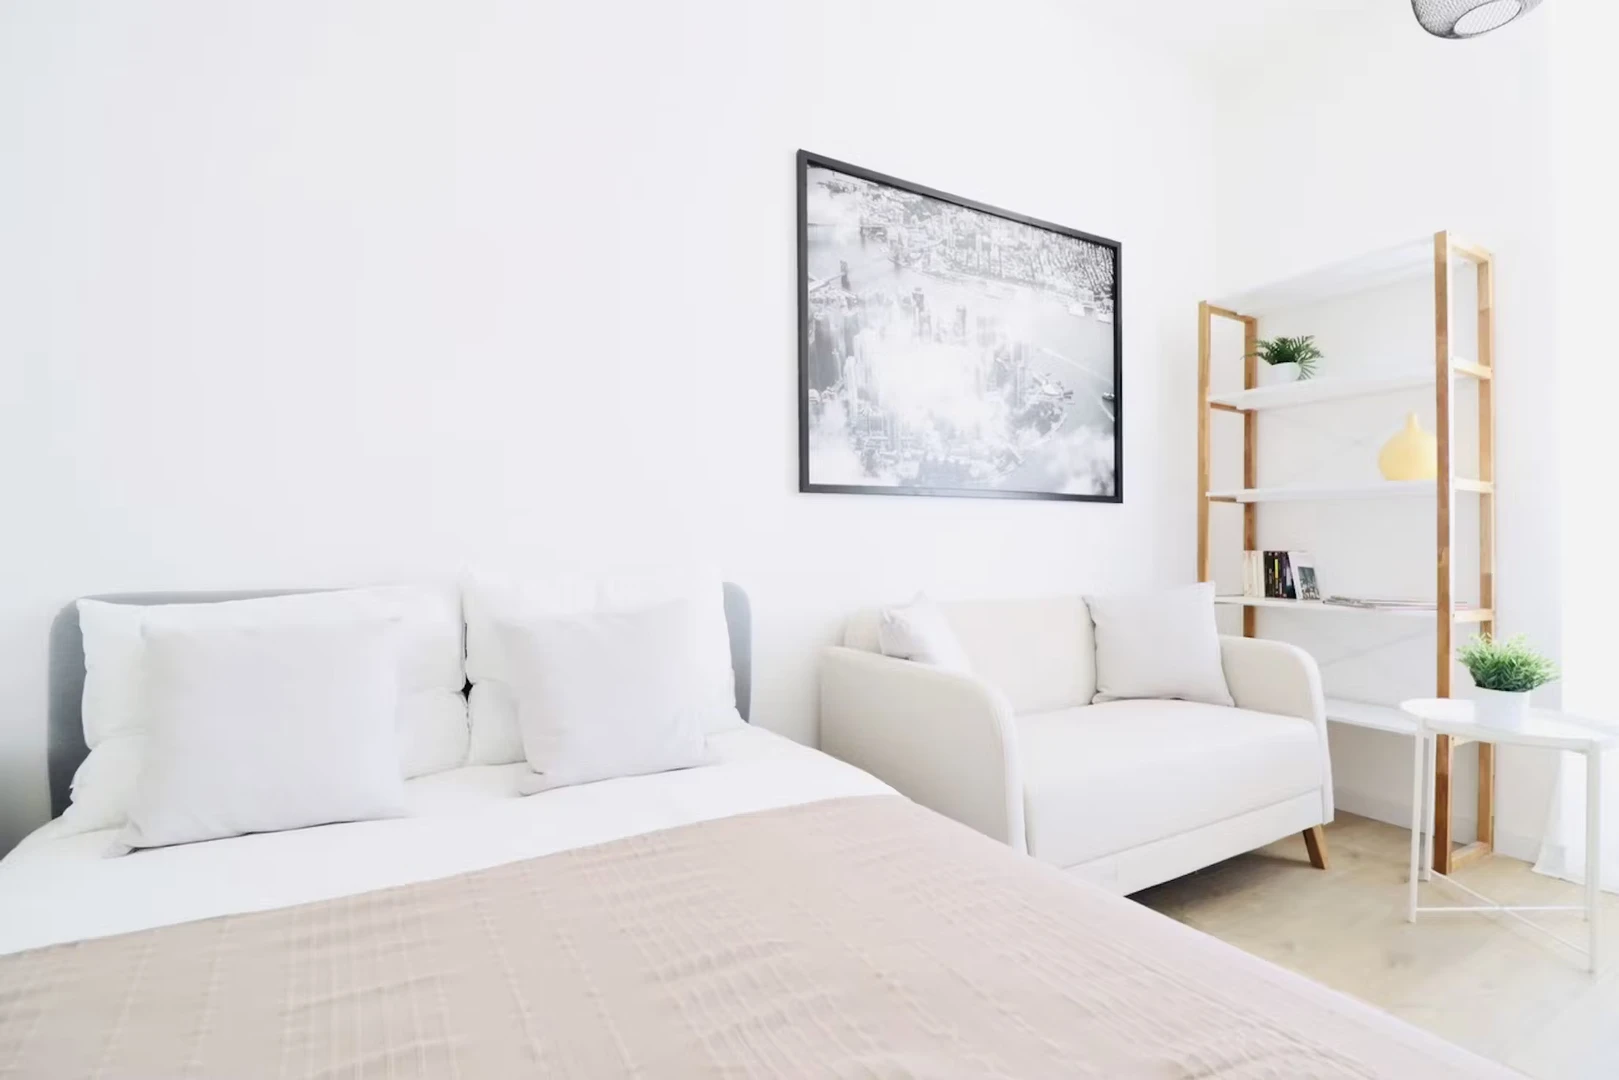 Alquiler de habitaciones por meses en Niza